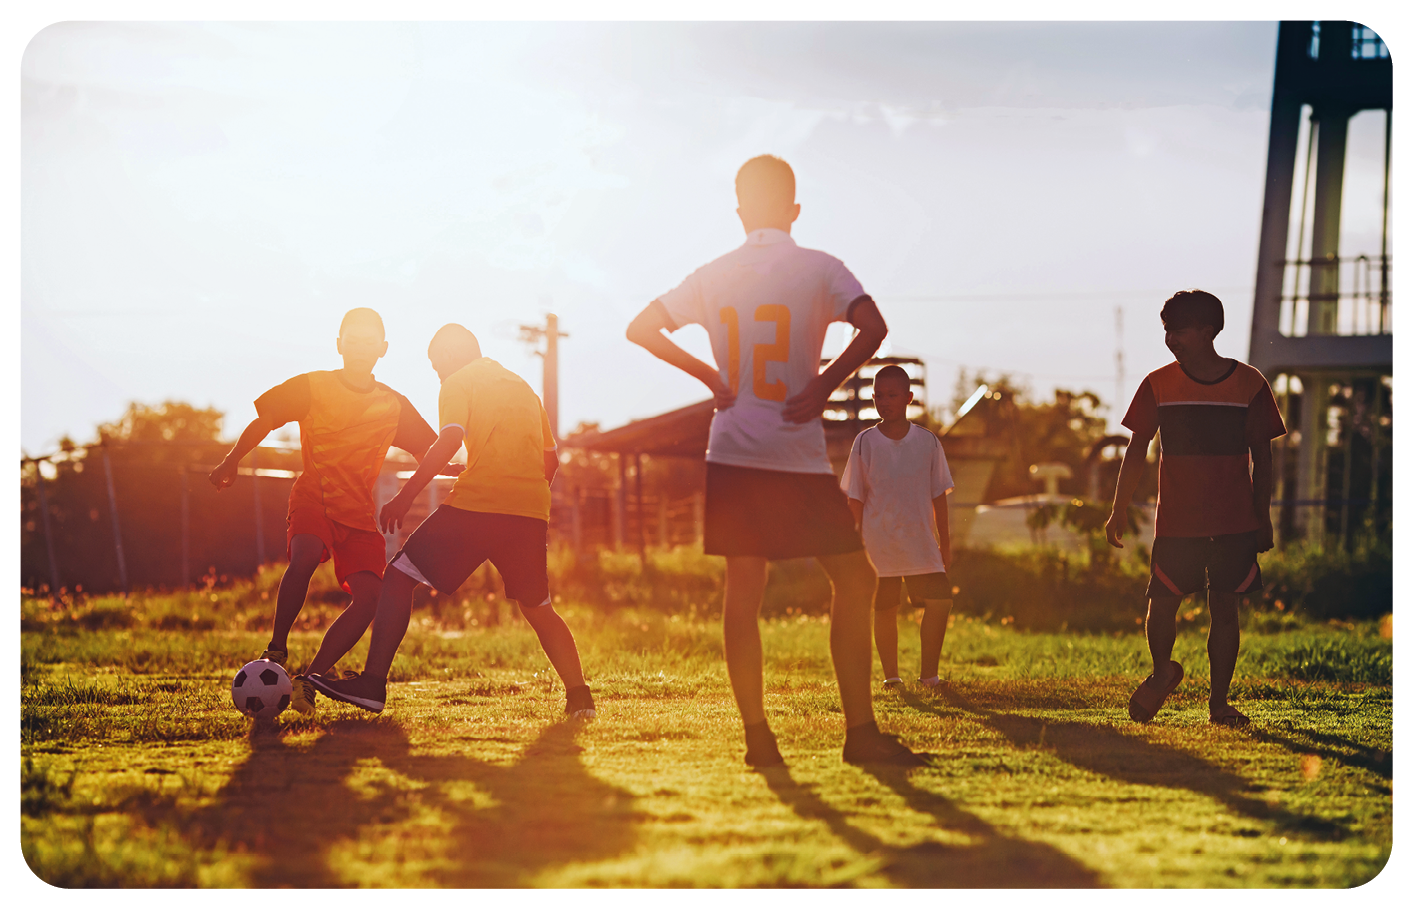 Fotografia. Cinco meninos em pé, jogando futebol com bola branca com detalhes em preto, em local com vegetação rasteira. Em segundo plano, vegetação, árvores de folhas verdes. Mais à direita, vista parcial de uma torre na vertical. No alto, céu em cinza e luz solar à esquerda.